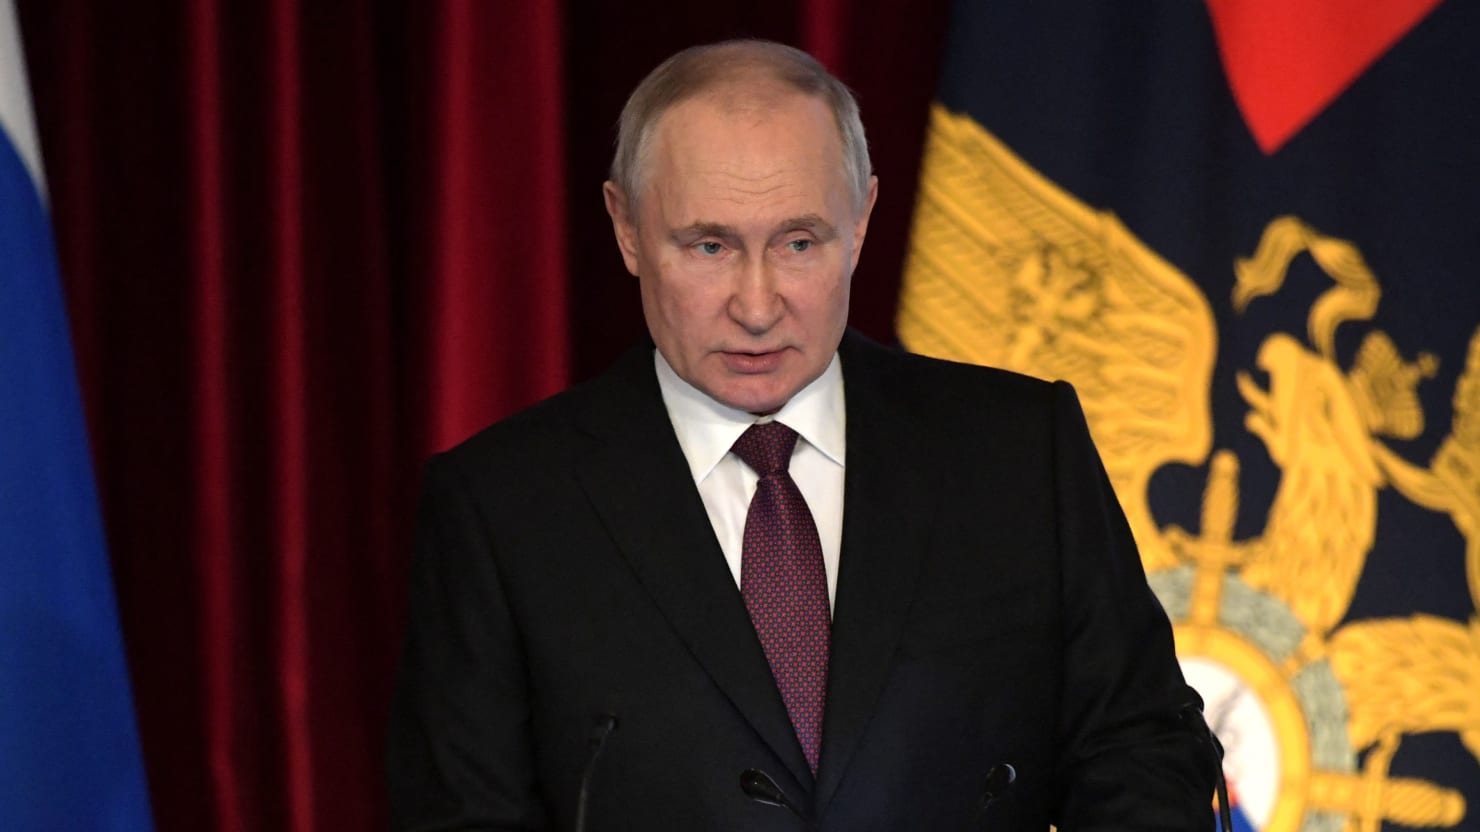 L’équipe Poutine s’effondre à cause d’un mandat d’arrêt international